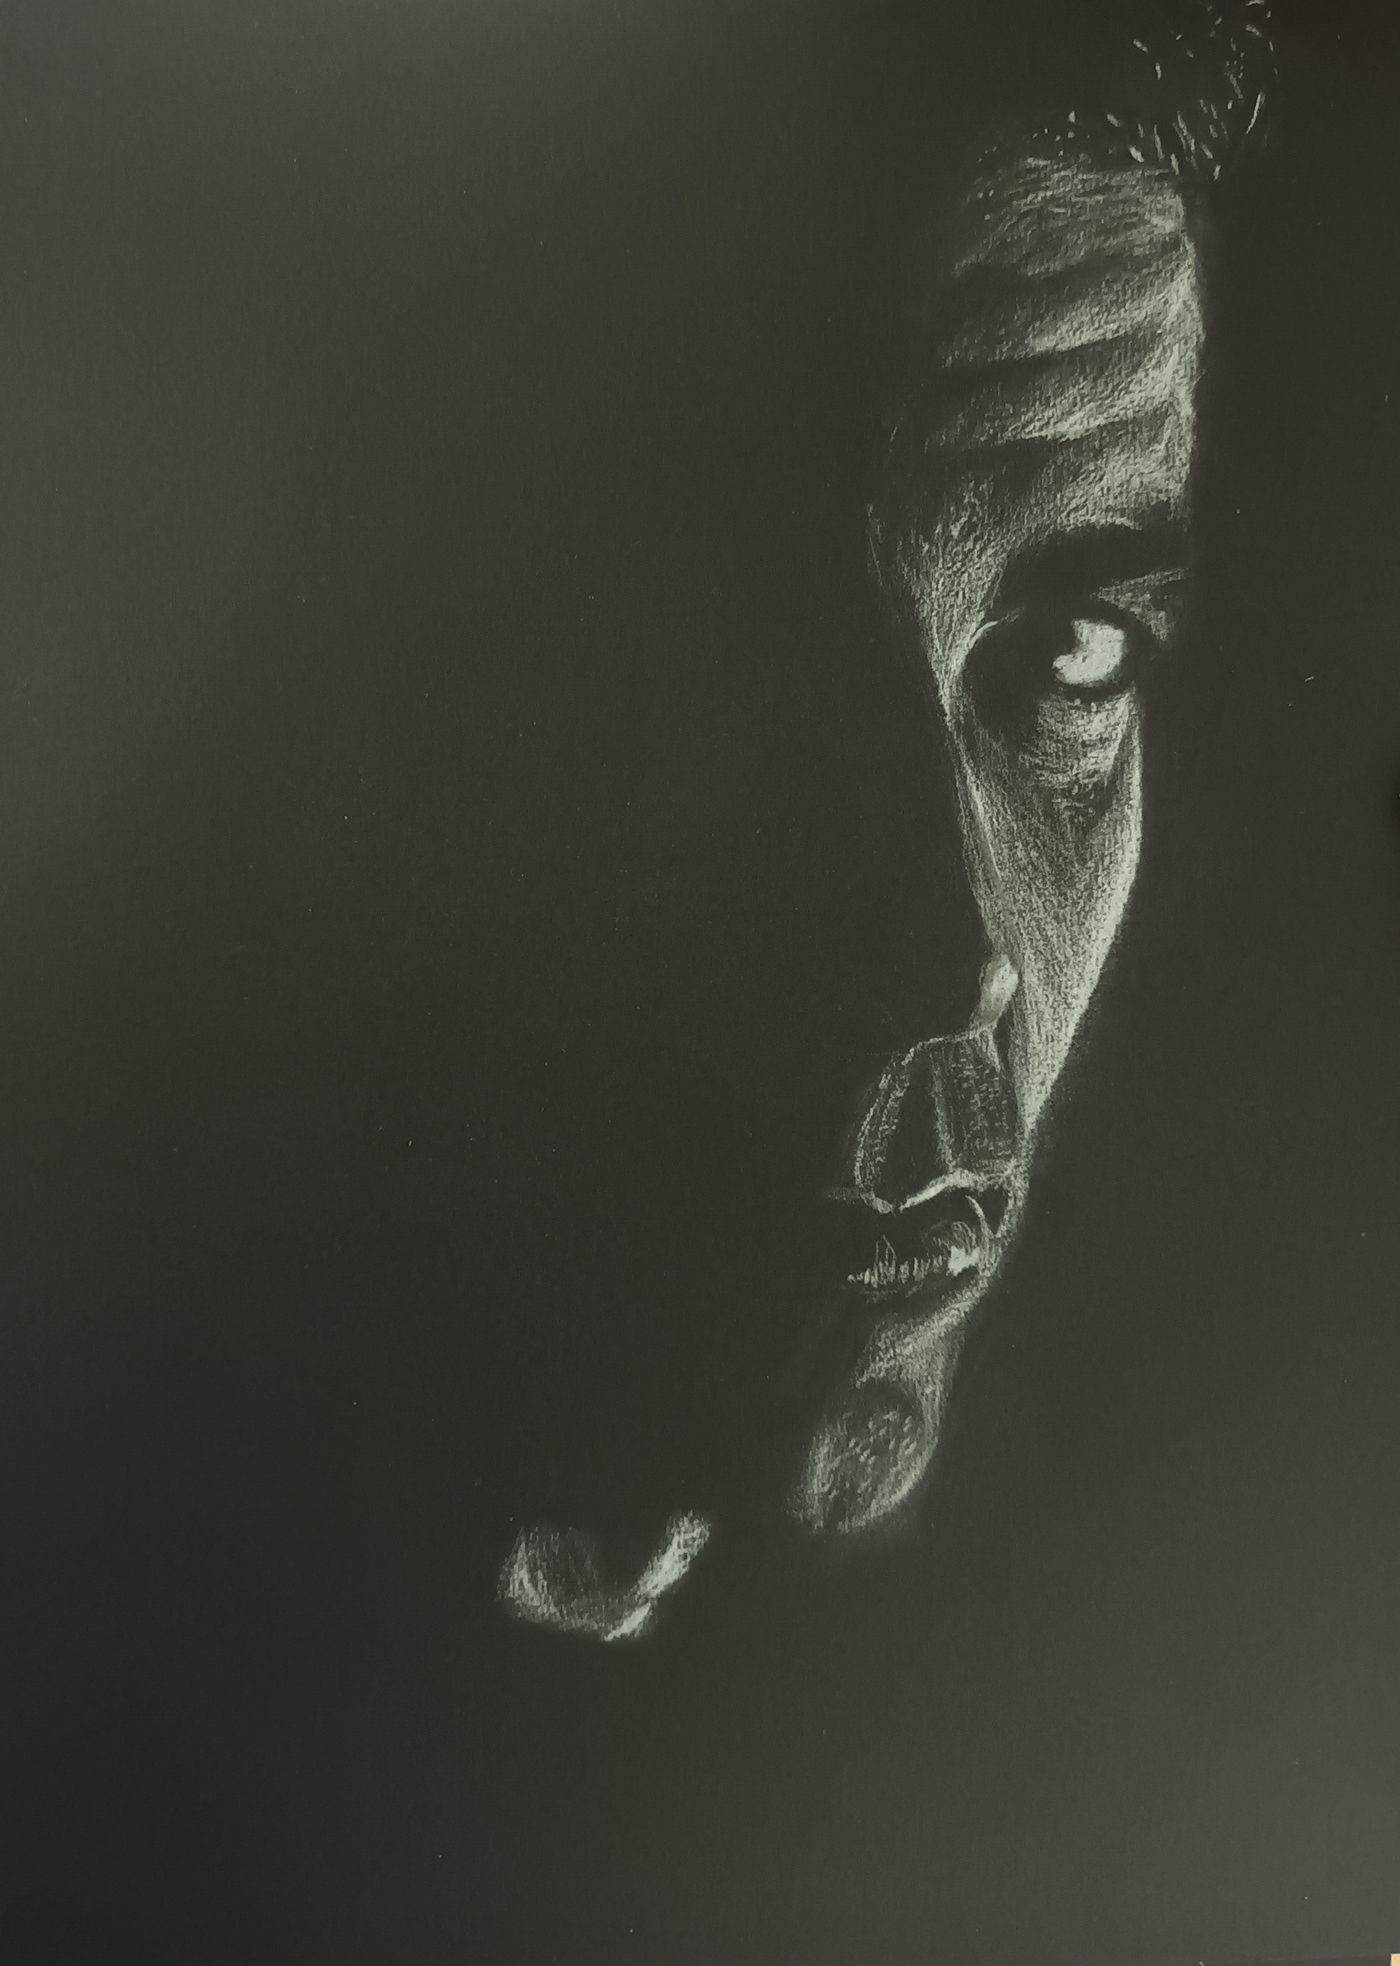 actor acteur george clooney noir et blanc crayon dessin réaliste ultrarealisme